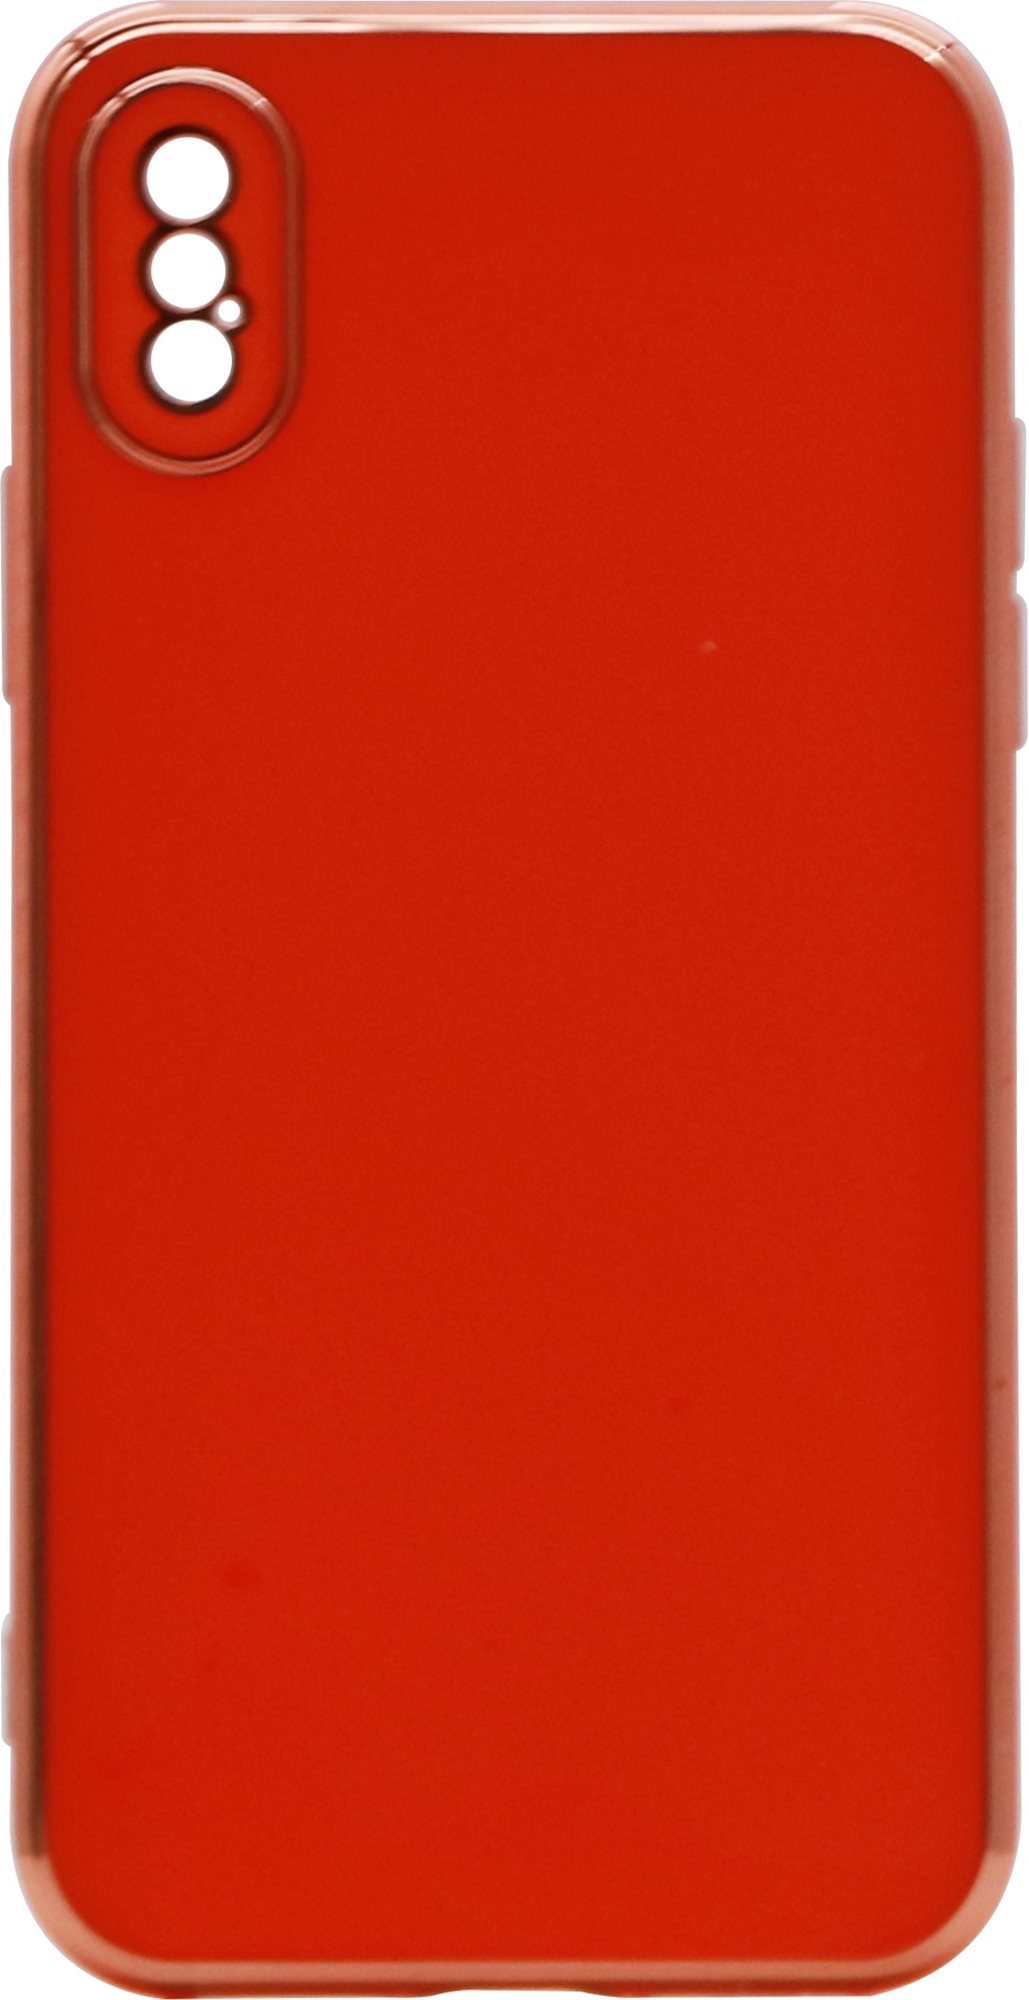 Telefon tok iWill Luxury Electroplating Phone Case az iPhone X készülékhez Orange